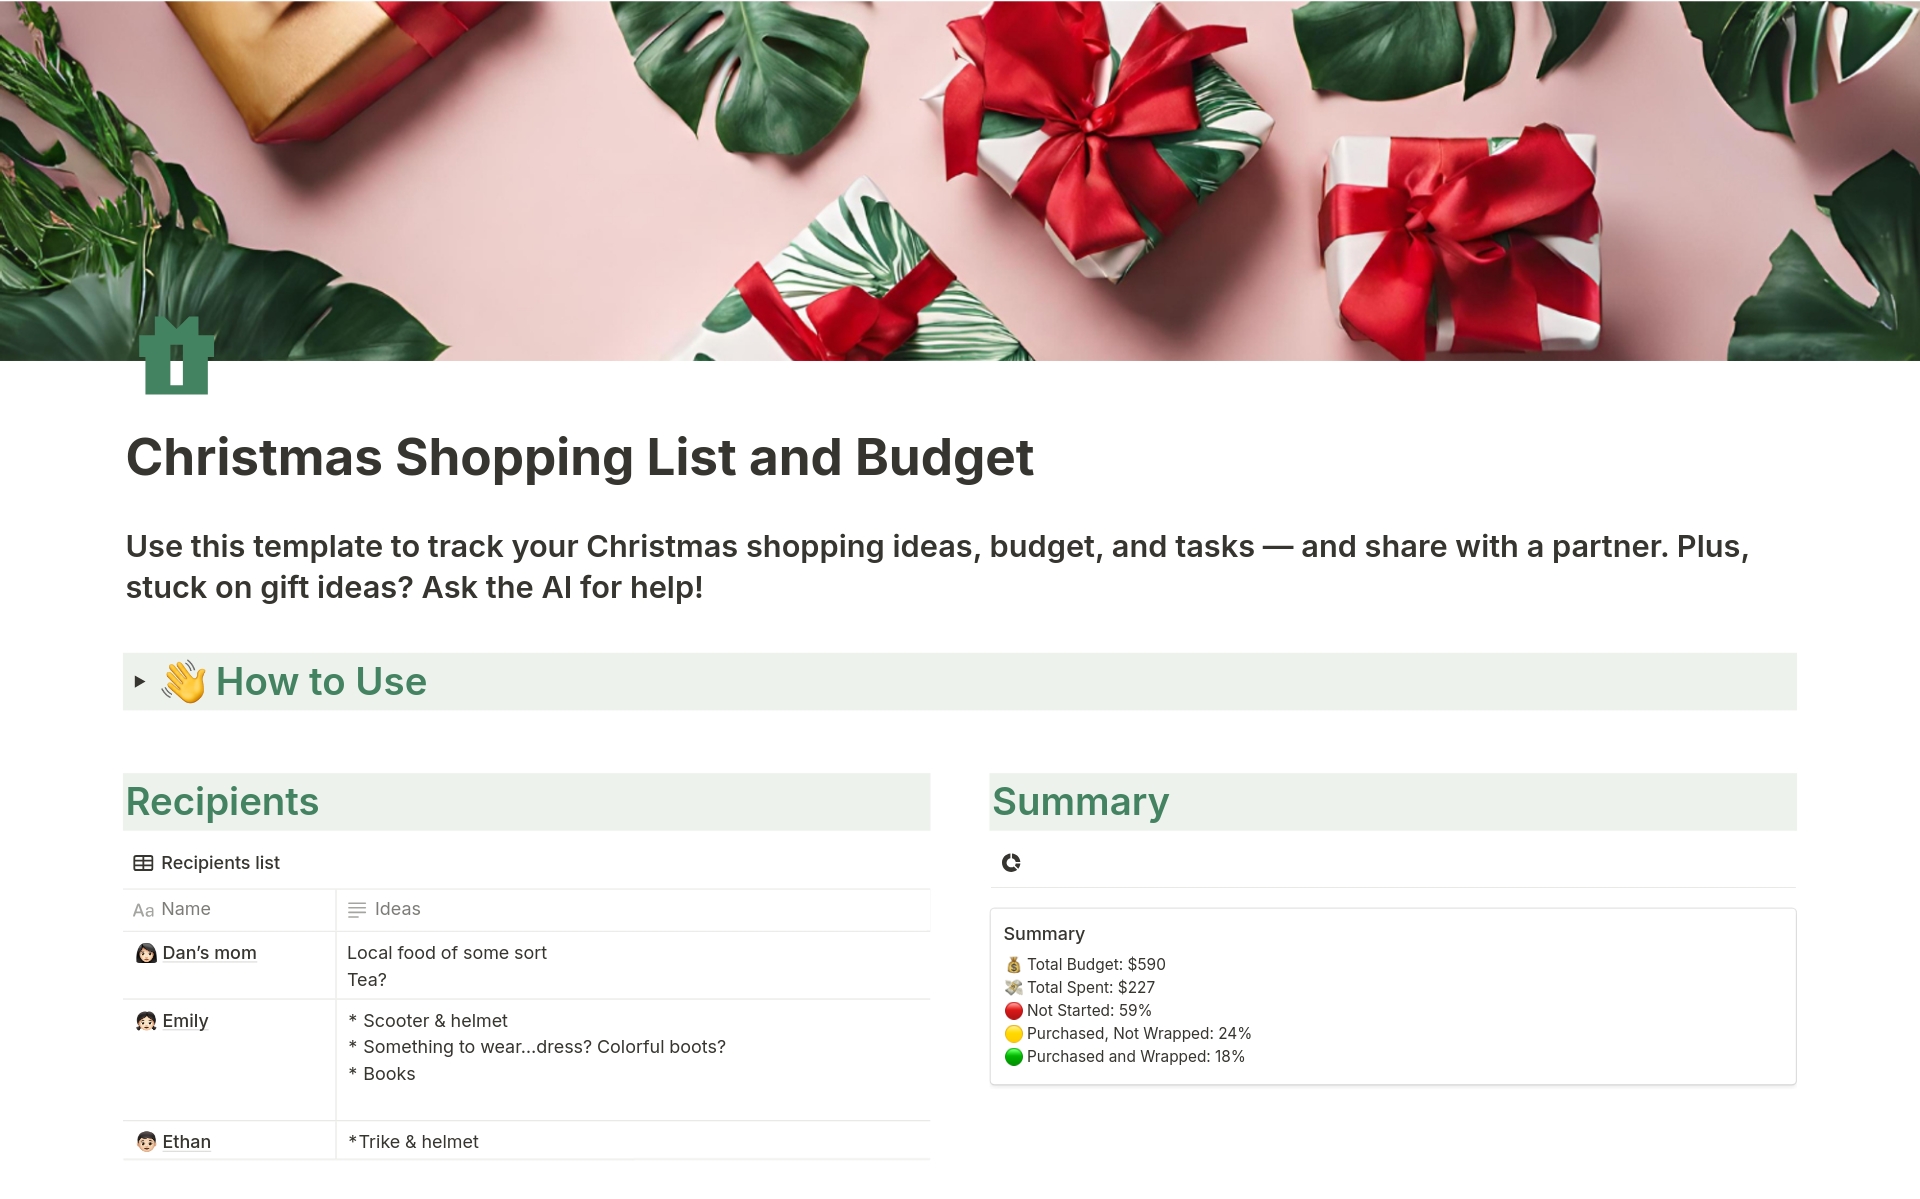 Uma prévia do modelo para Christmas Shopping List and Budget